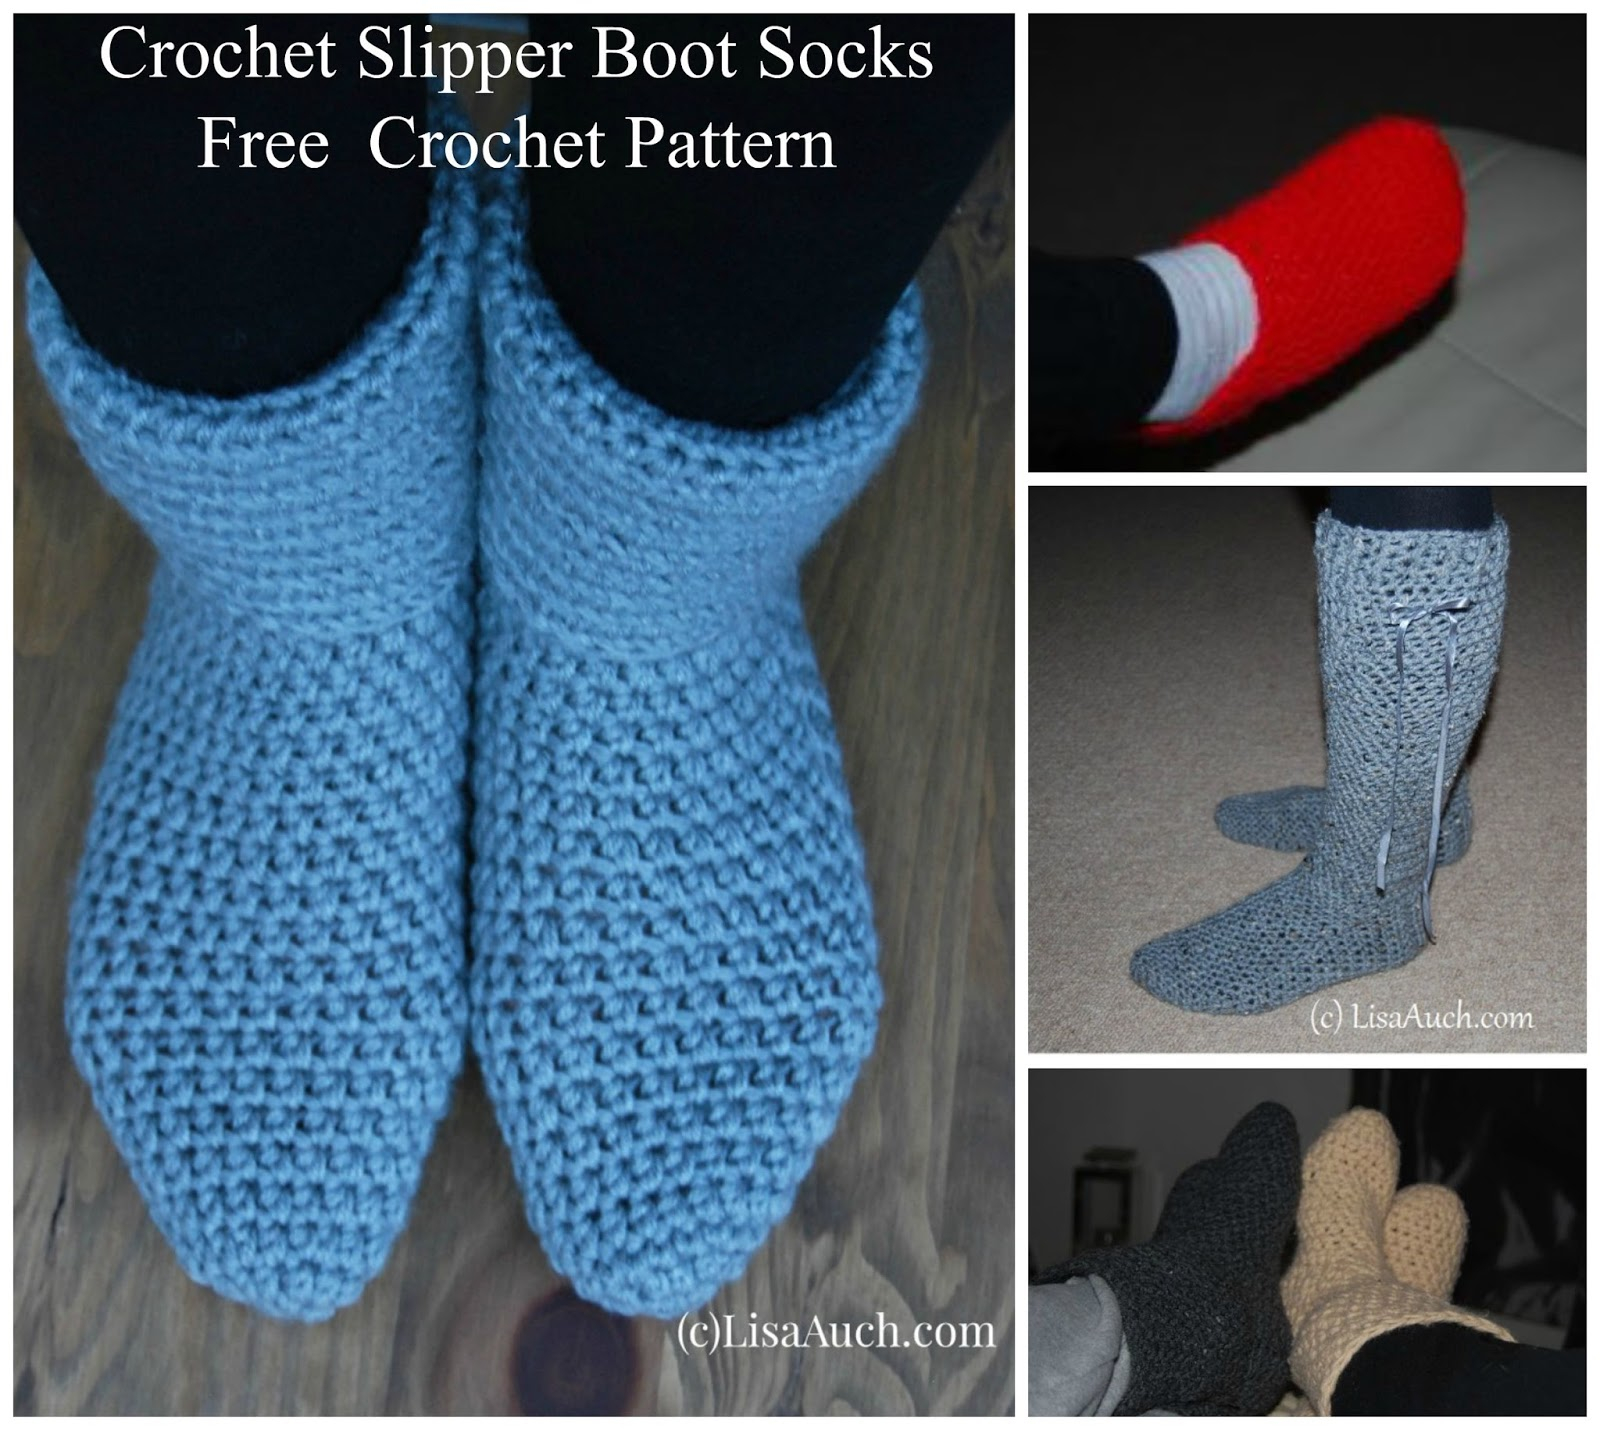 Crochet Slipper Boots Free Pattern Crochet Slipper Boots A Free Crochet Pattern How To Crochet Slipper